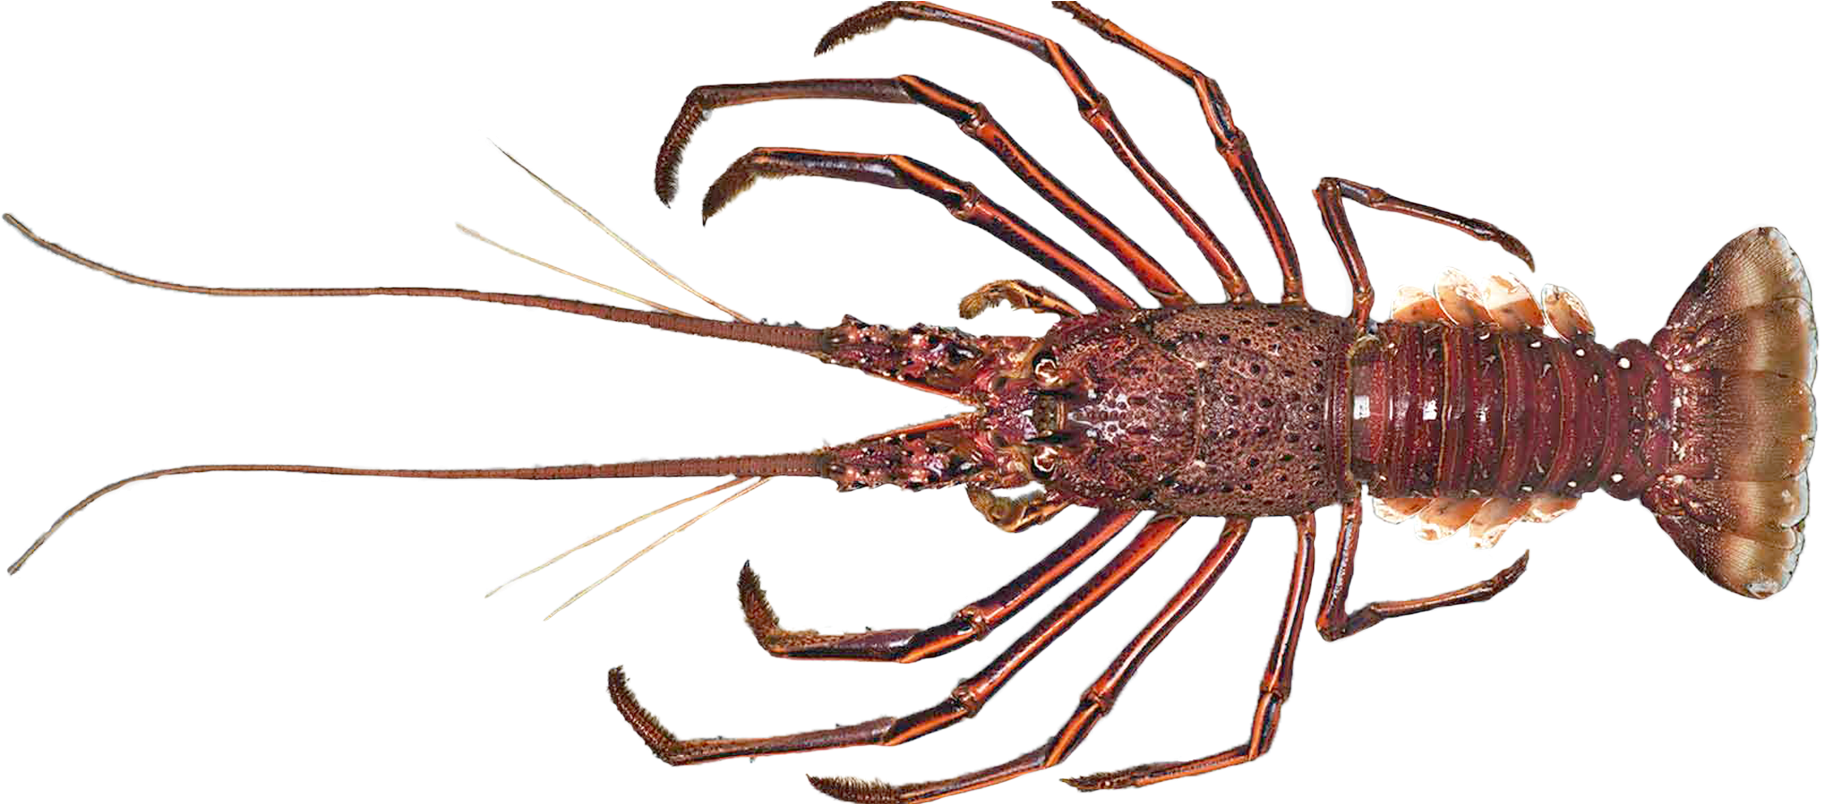 Spiny Lobster Transparent Background